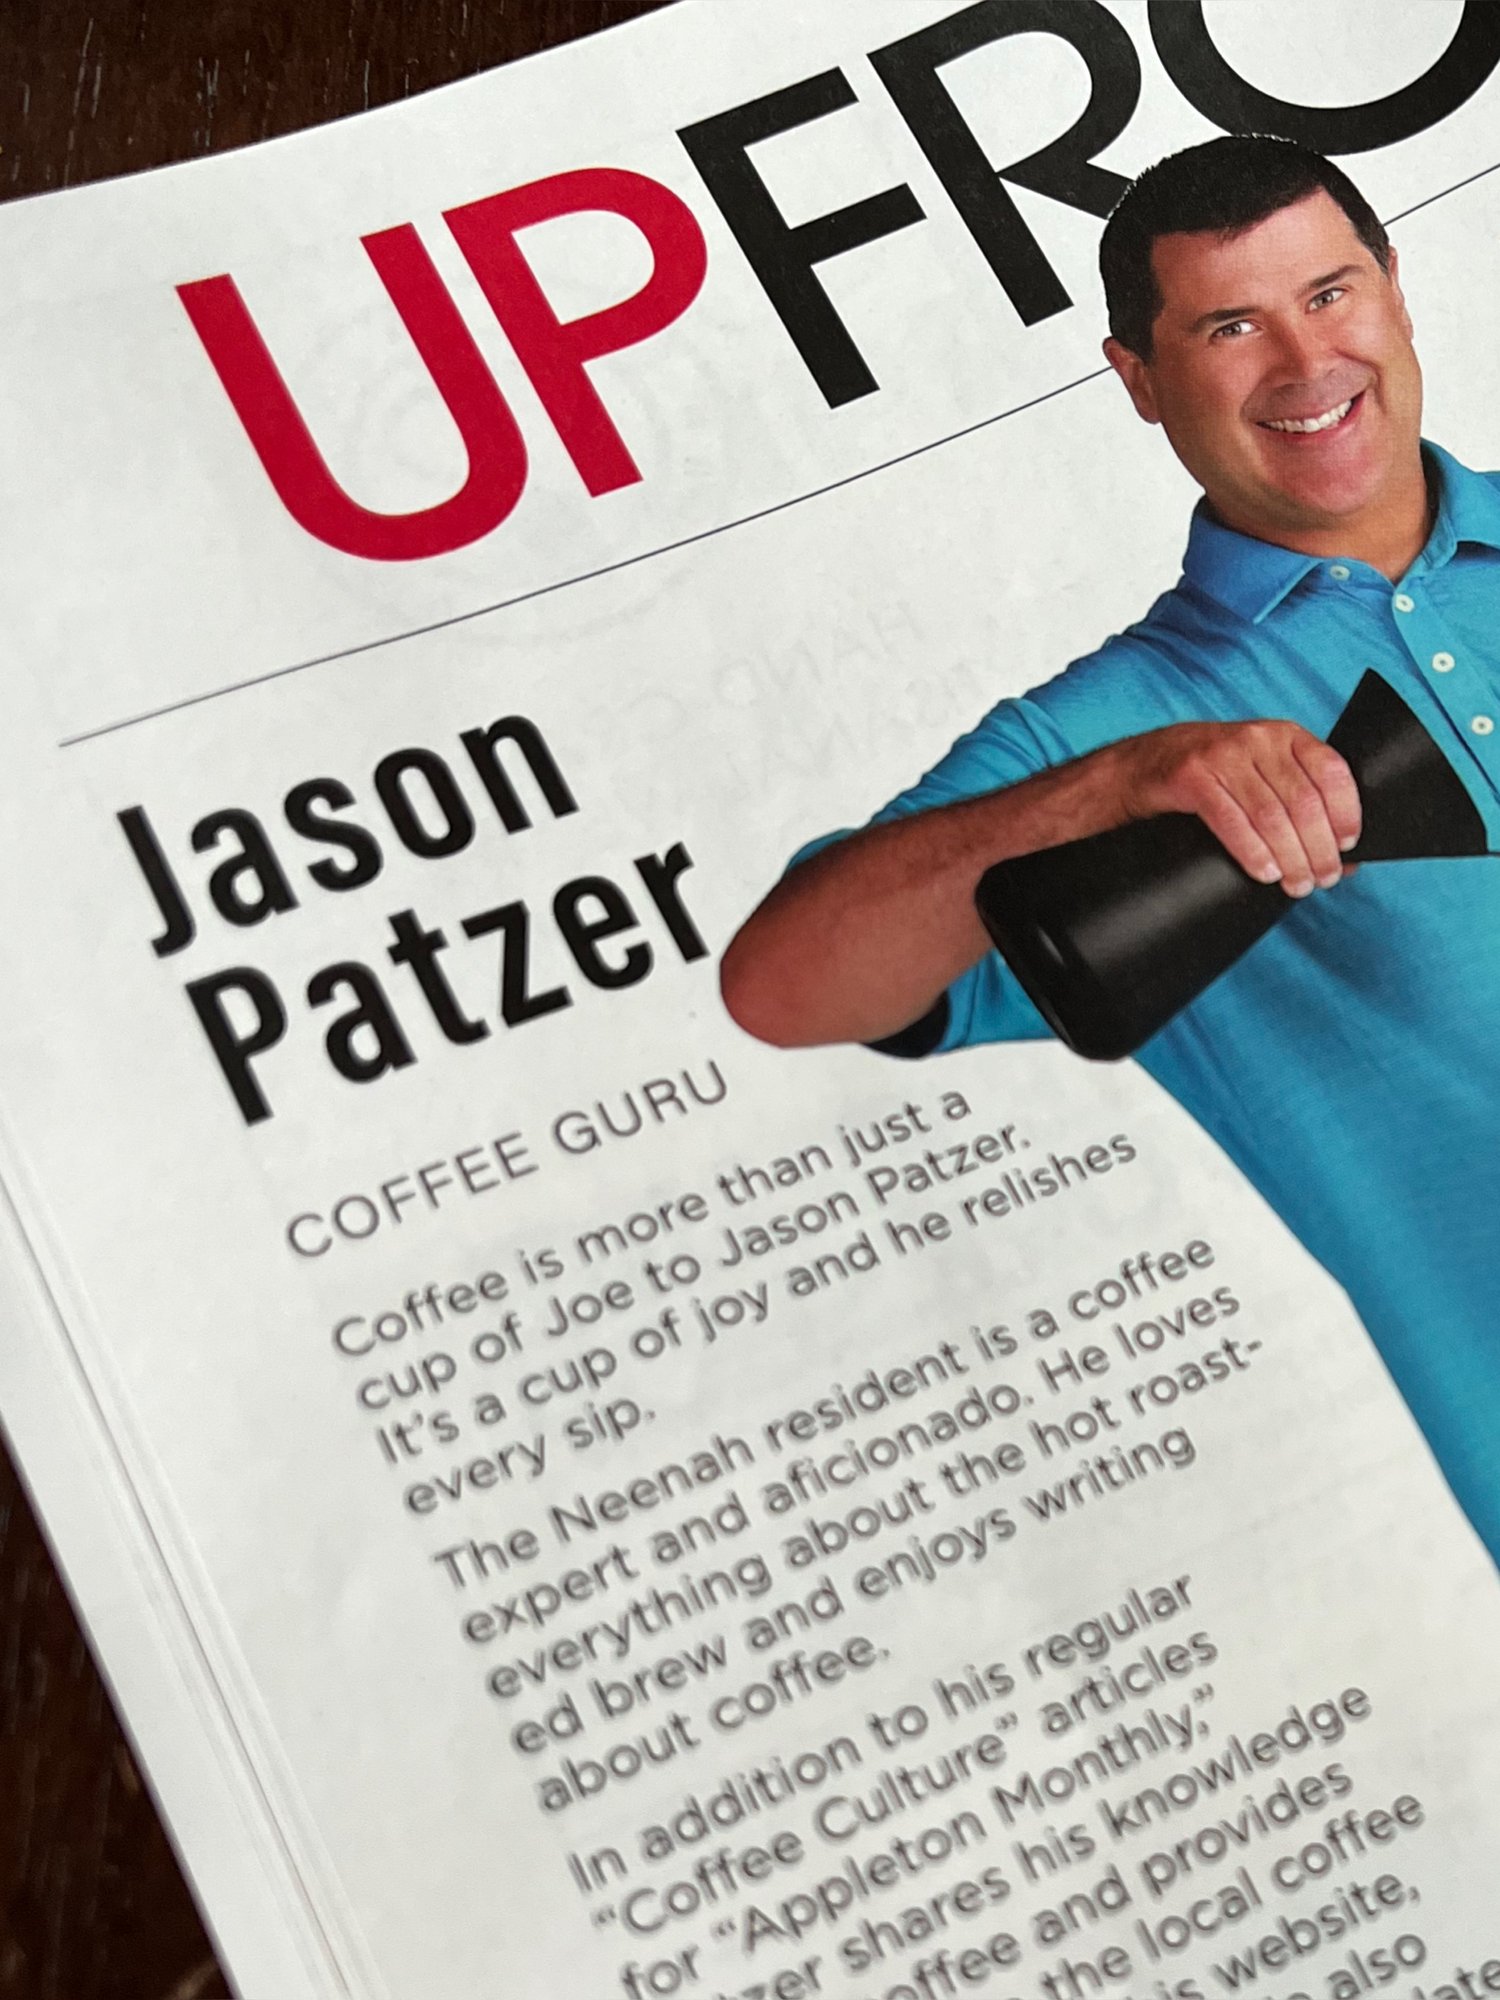 Patzer Coffee